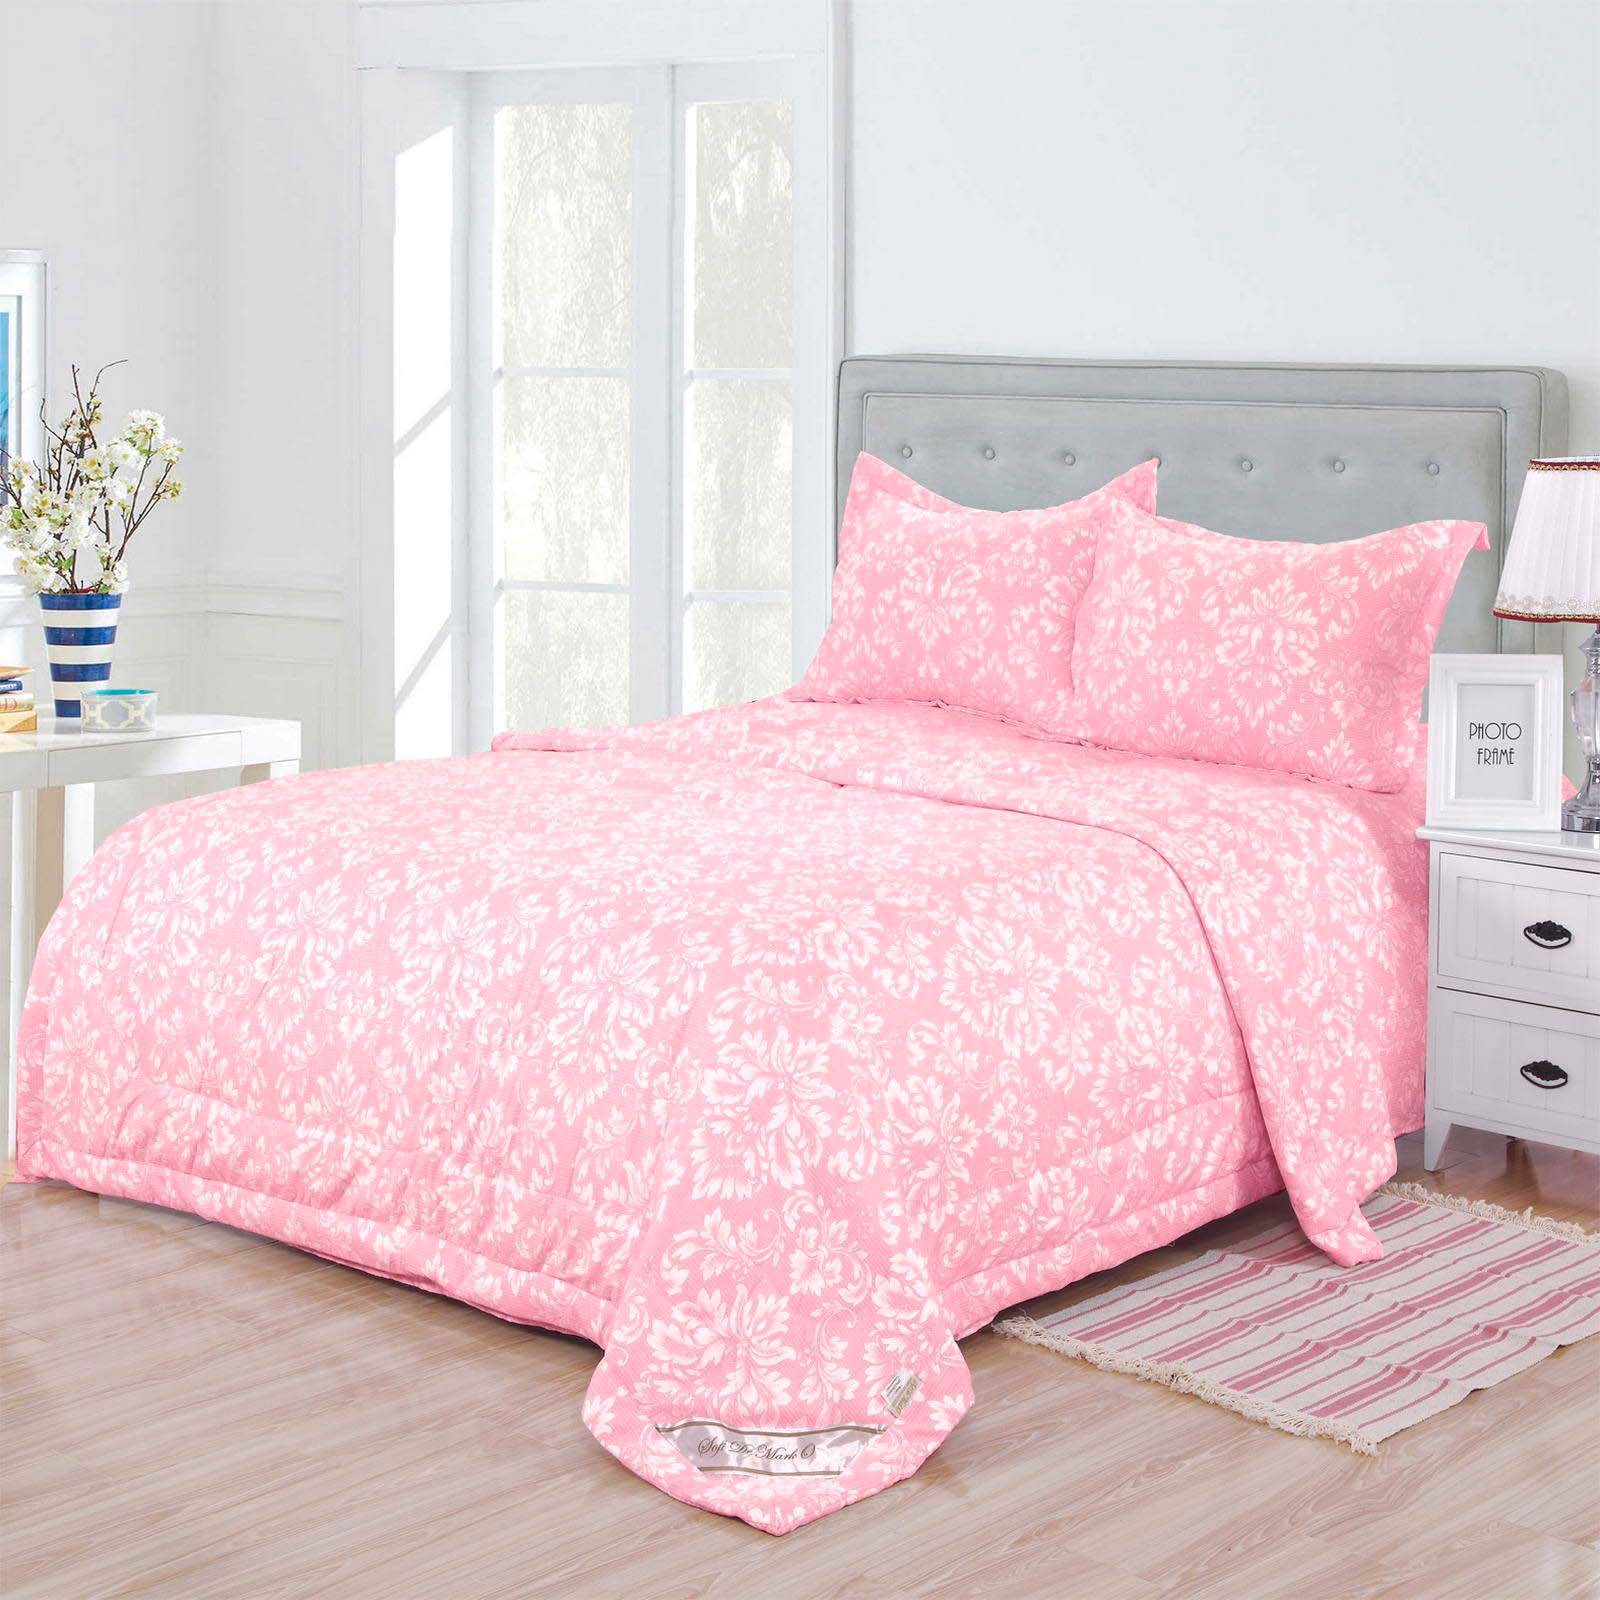 Постельное белье с одеялом Гермес Цвет: Розовый (Семейное (2 одеяла-покрывала)), размер 50х70 (2 шт) sofi703014 Постельное белье с одеялом Гермес Цвет: Розовый (Семейное (2 одеяла-покрывала)) - фото 1